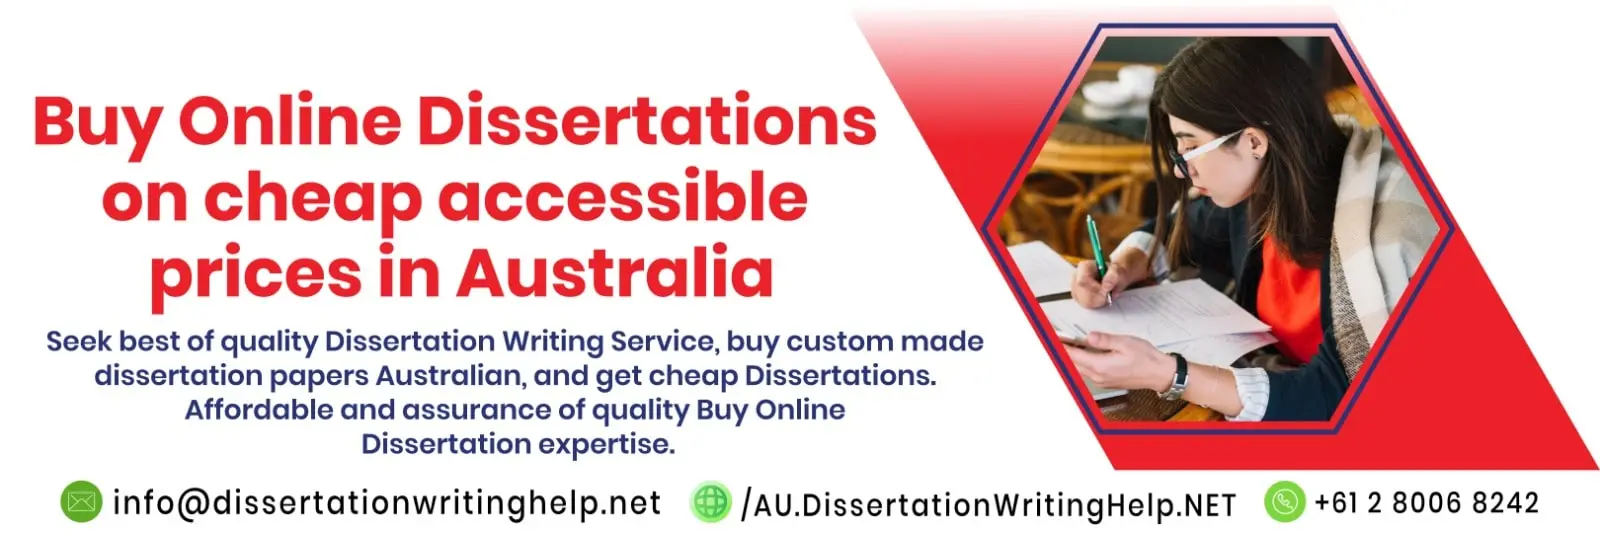 Buy Online Dissertation Help